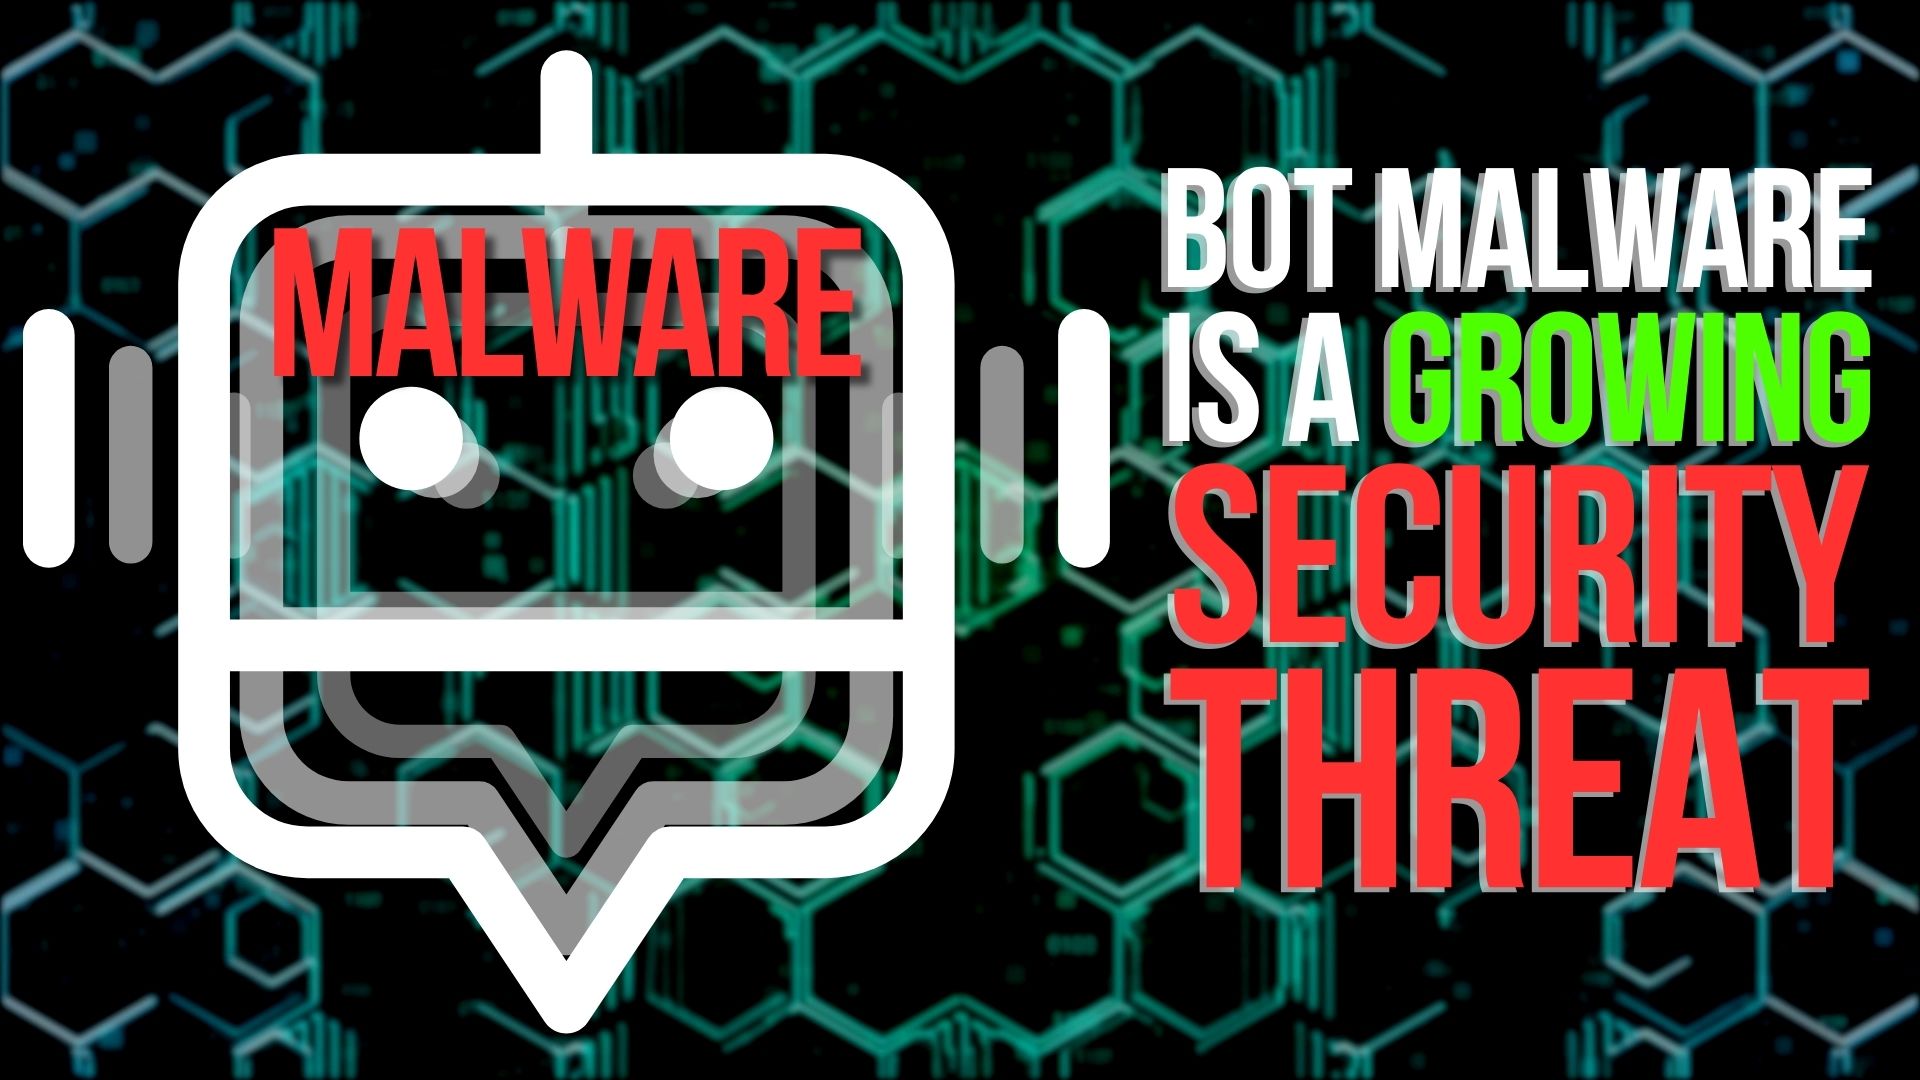 Bot malware